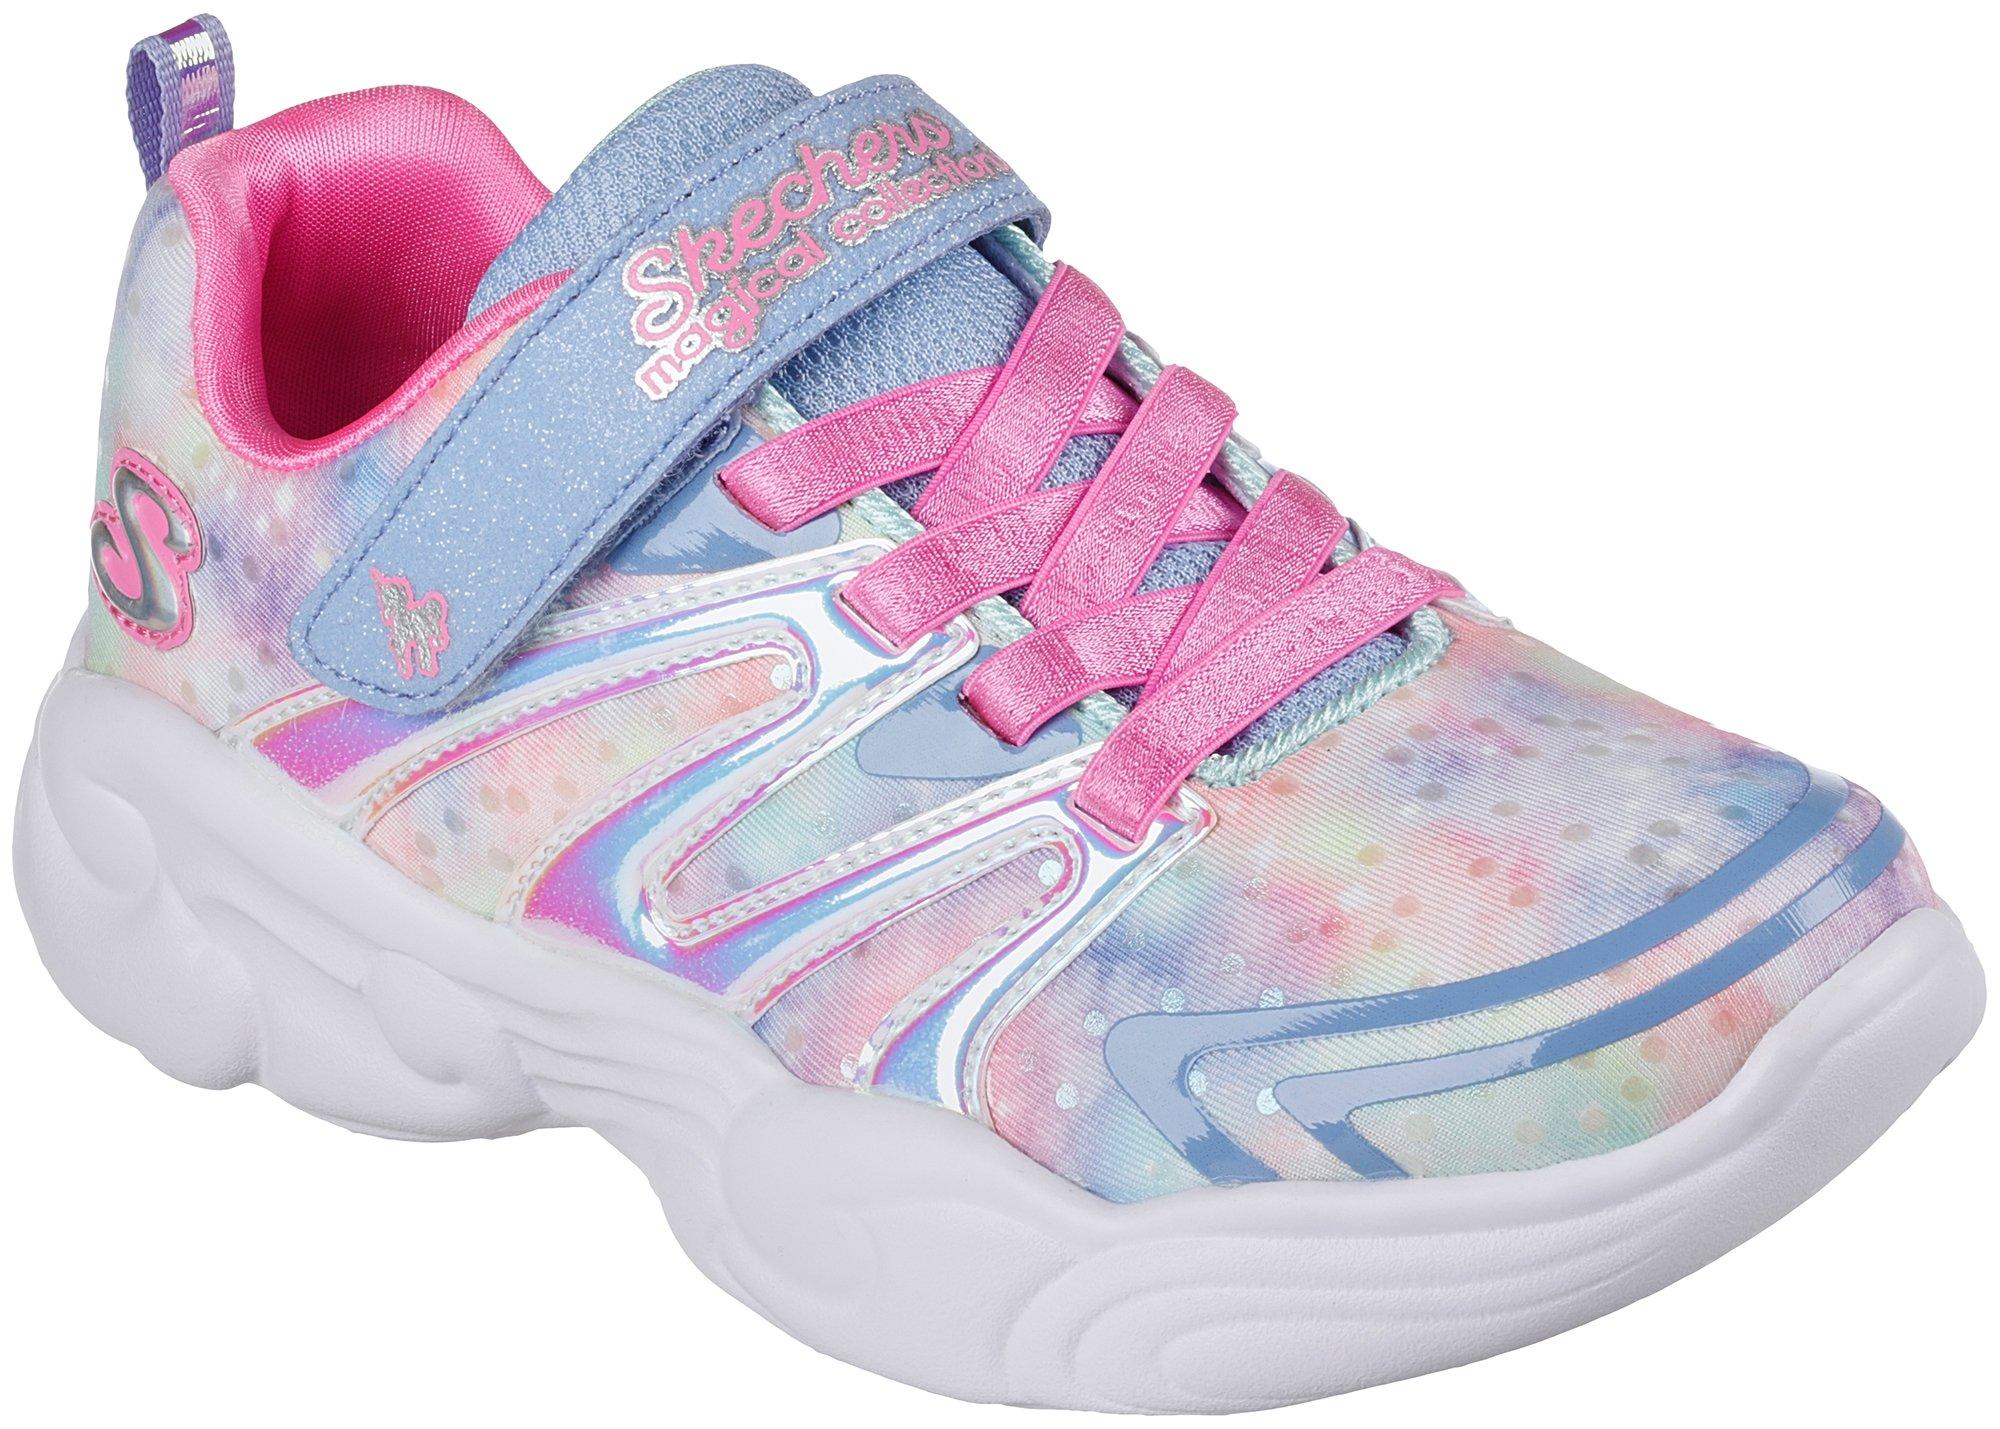 Girls Unicorn Storm Athletic Shoes